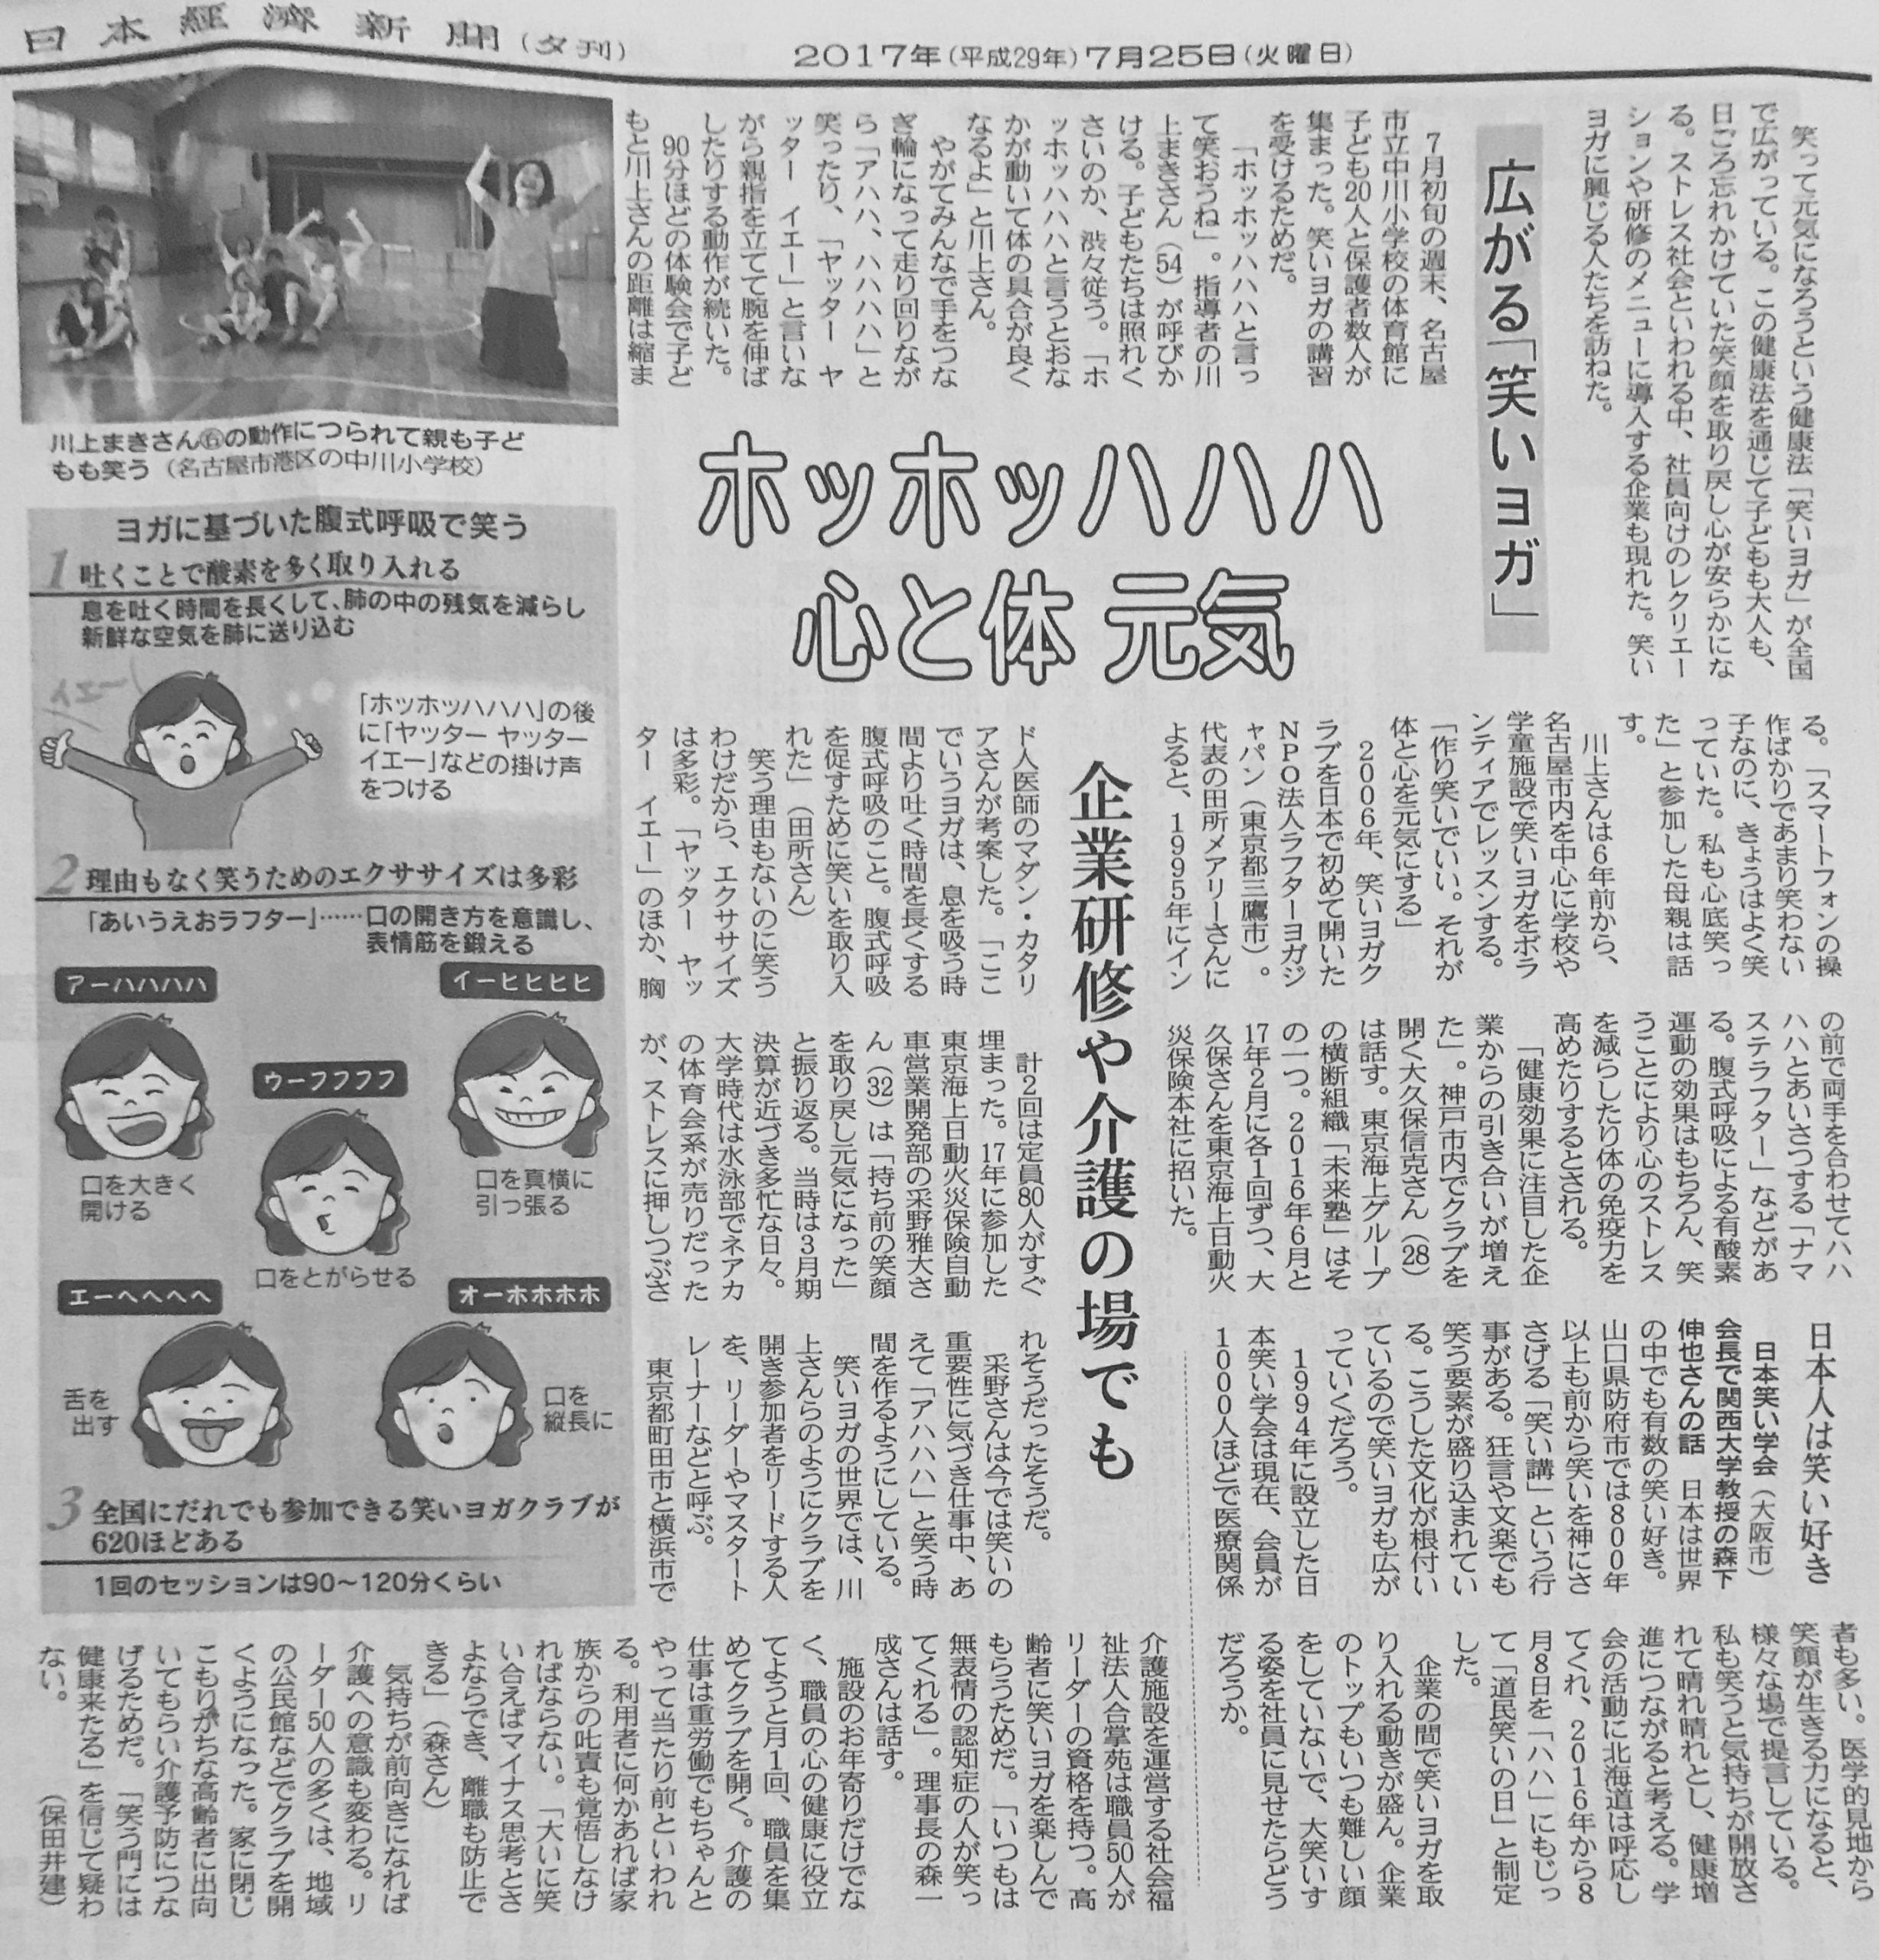 昨日の日経新聞に掲載されました。「企業研修や介護の場でも笑いヨガ」